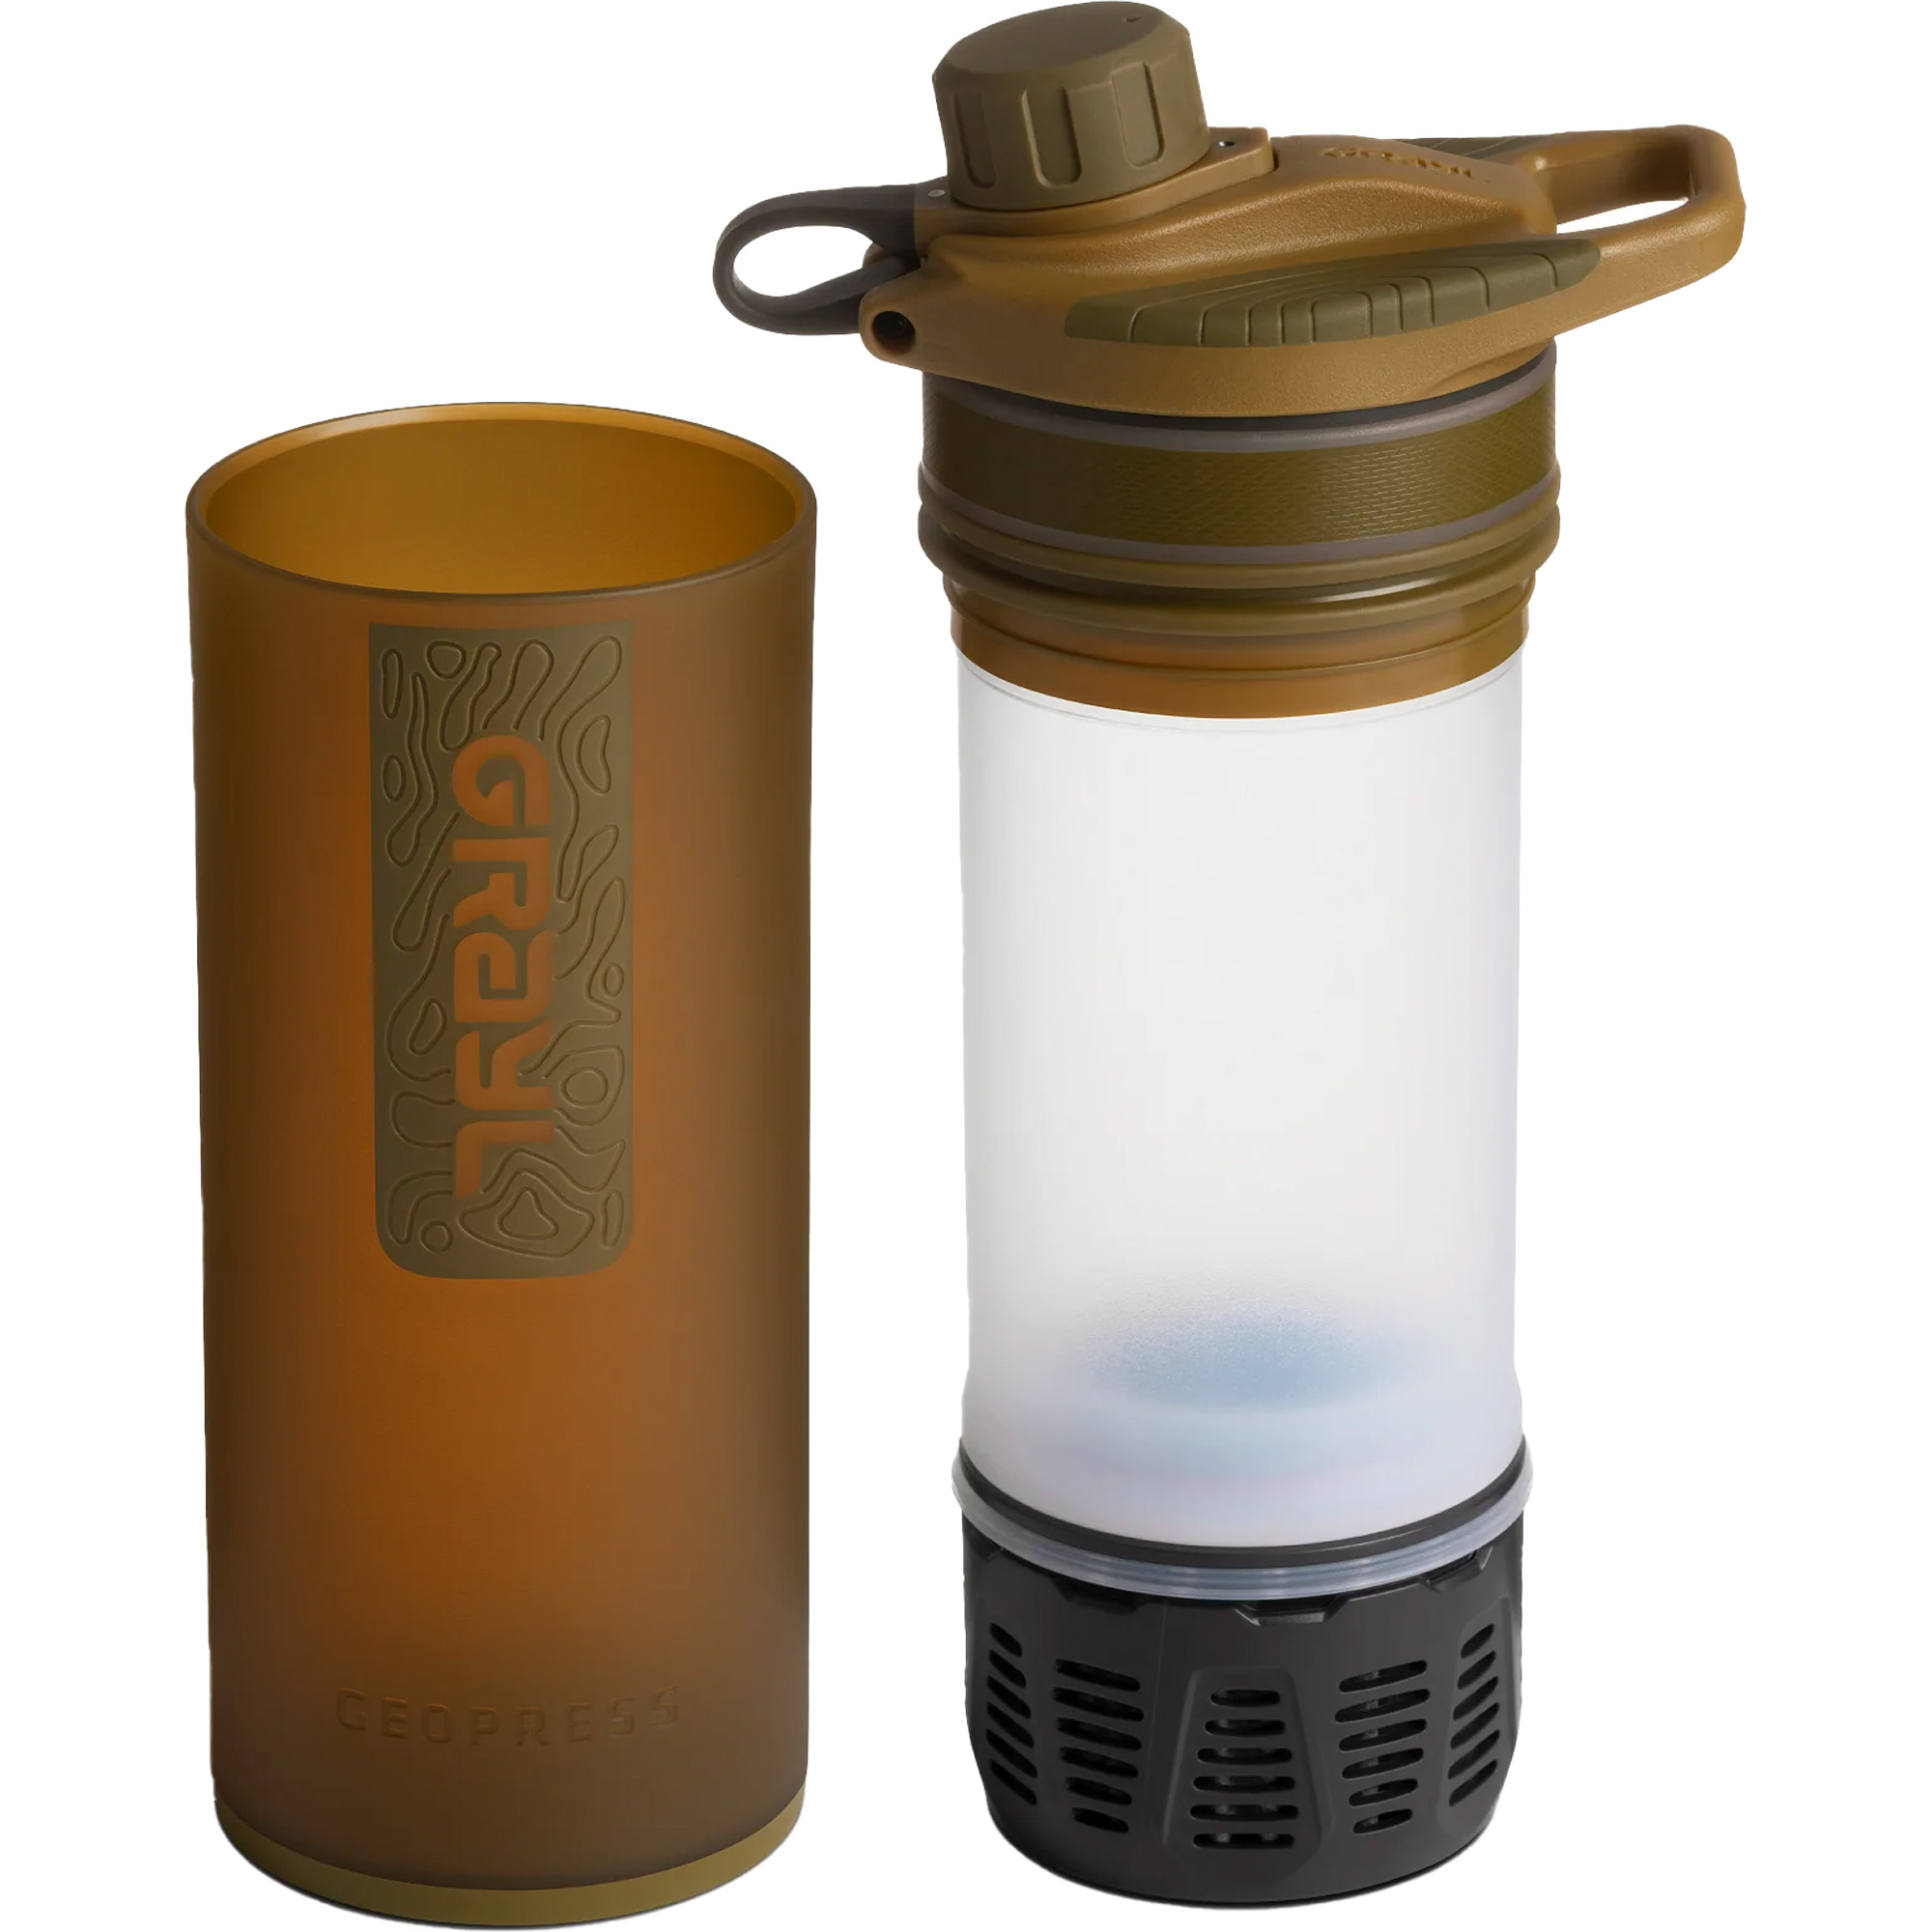 Grayl GeoPress Water Purifier Travel Filter Bottle